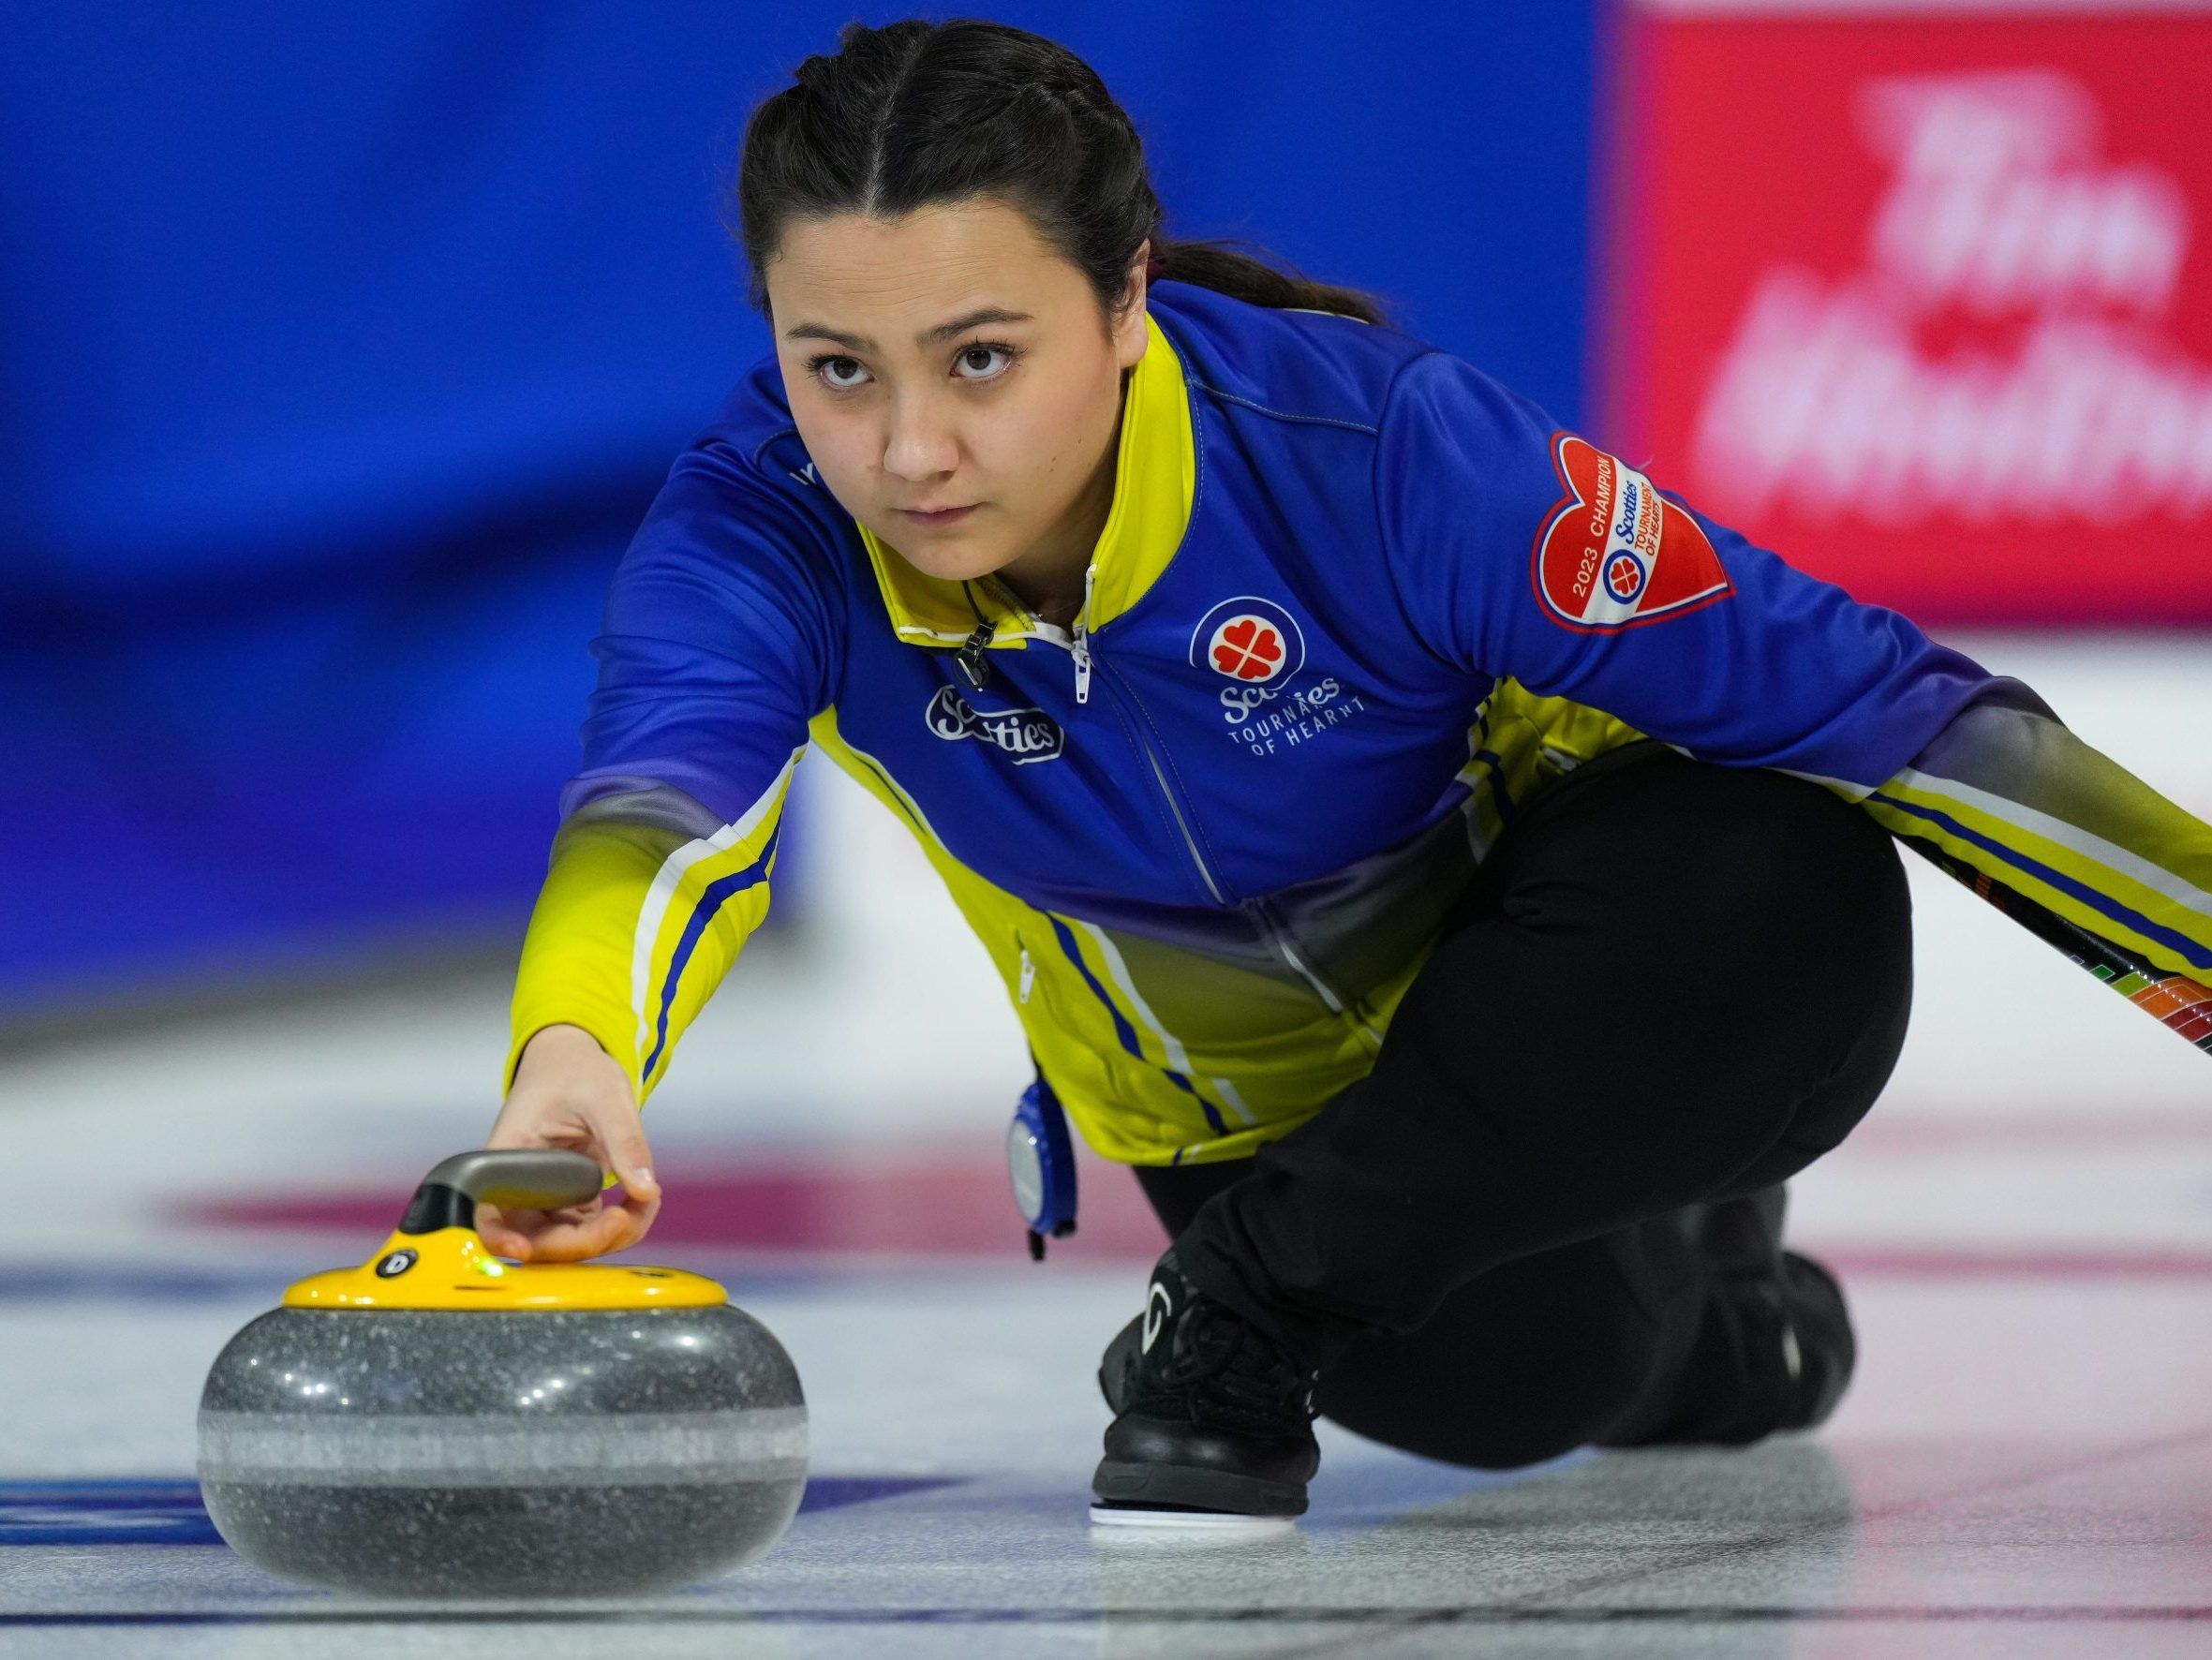 Team Skrlik heads to Alberta Scotties with repeat curling hopes in toe